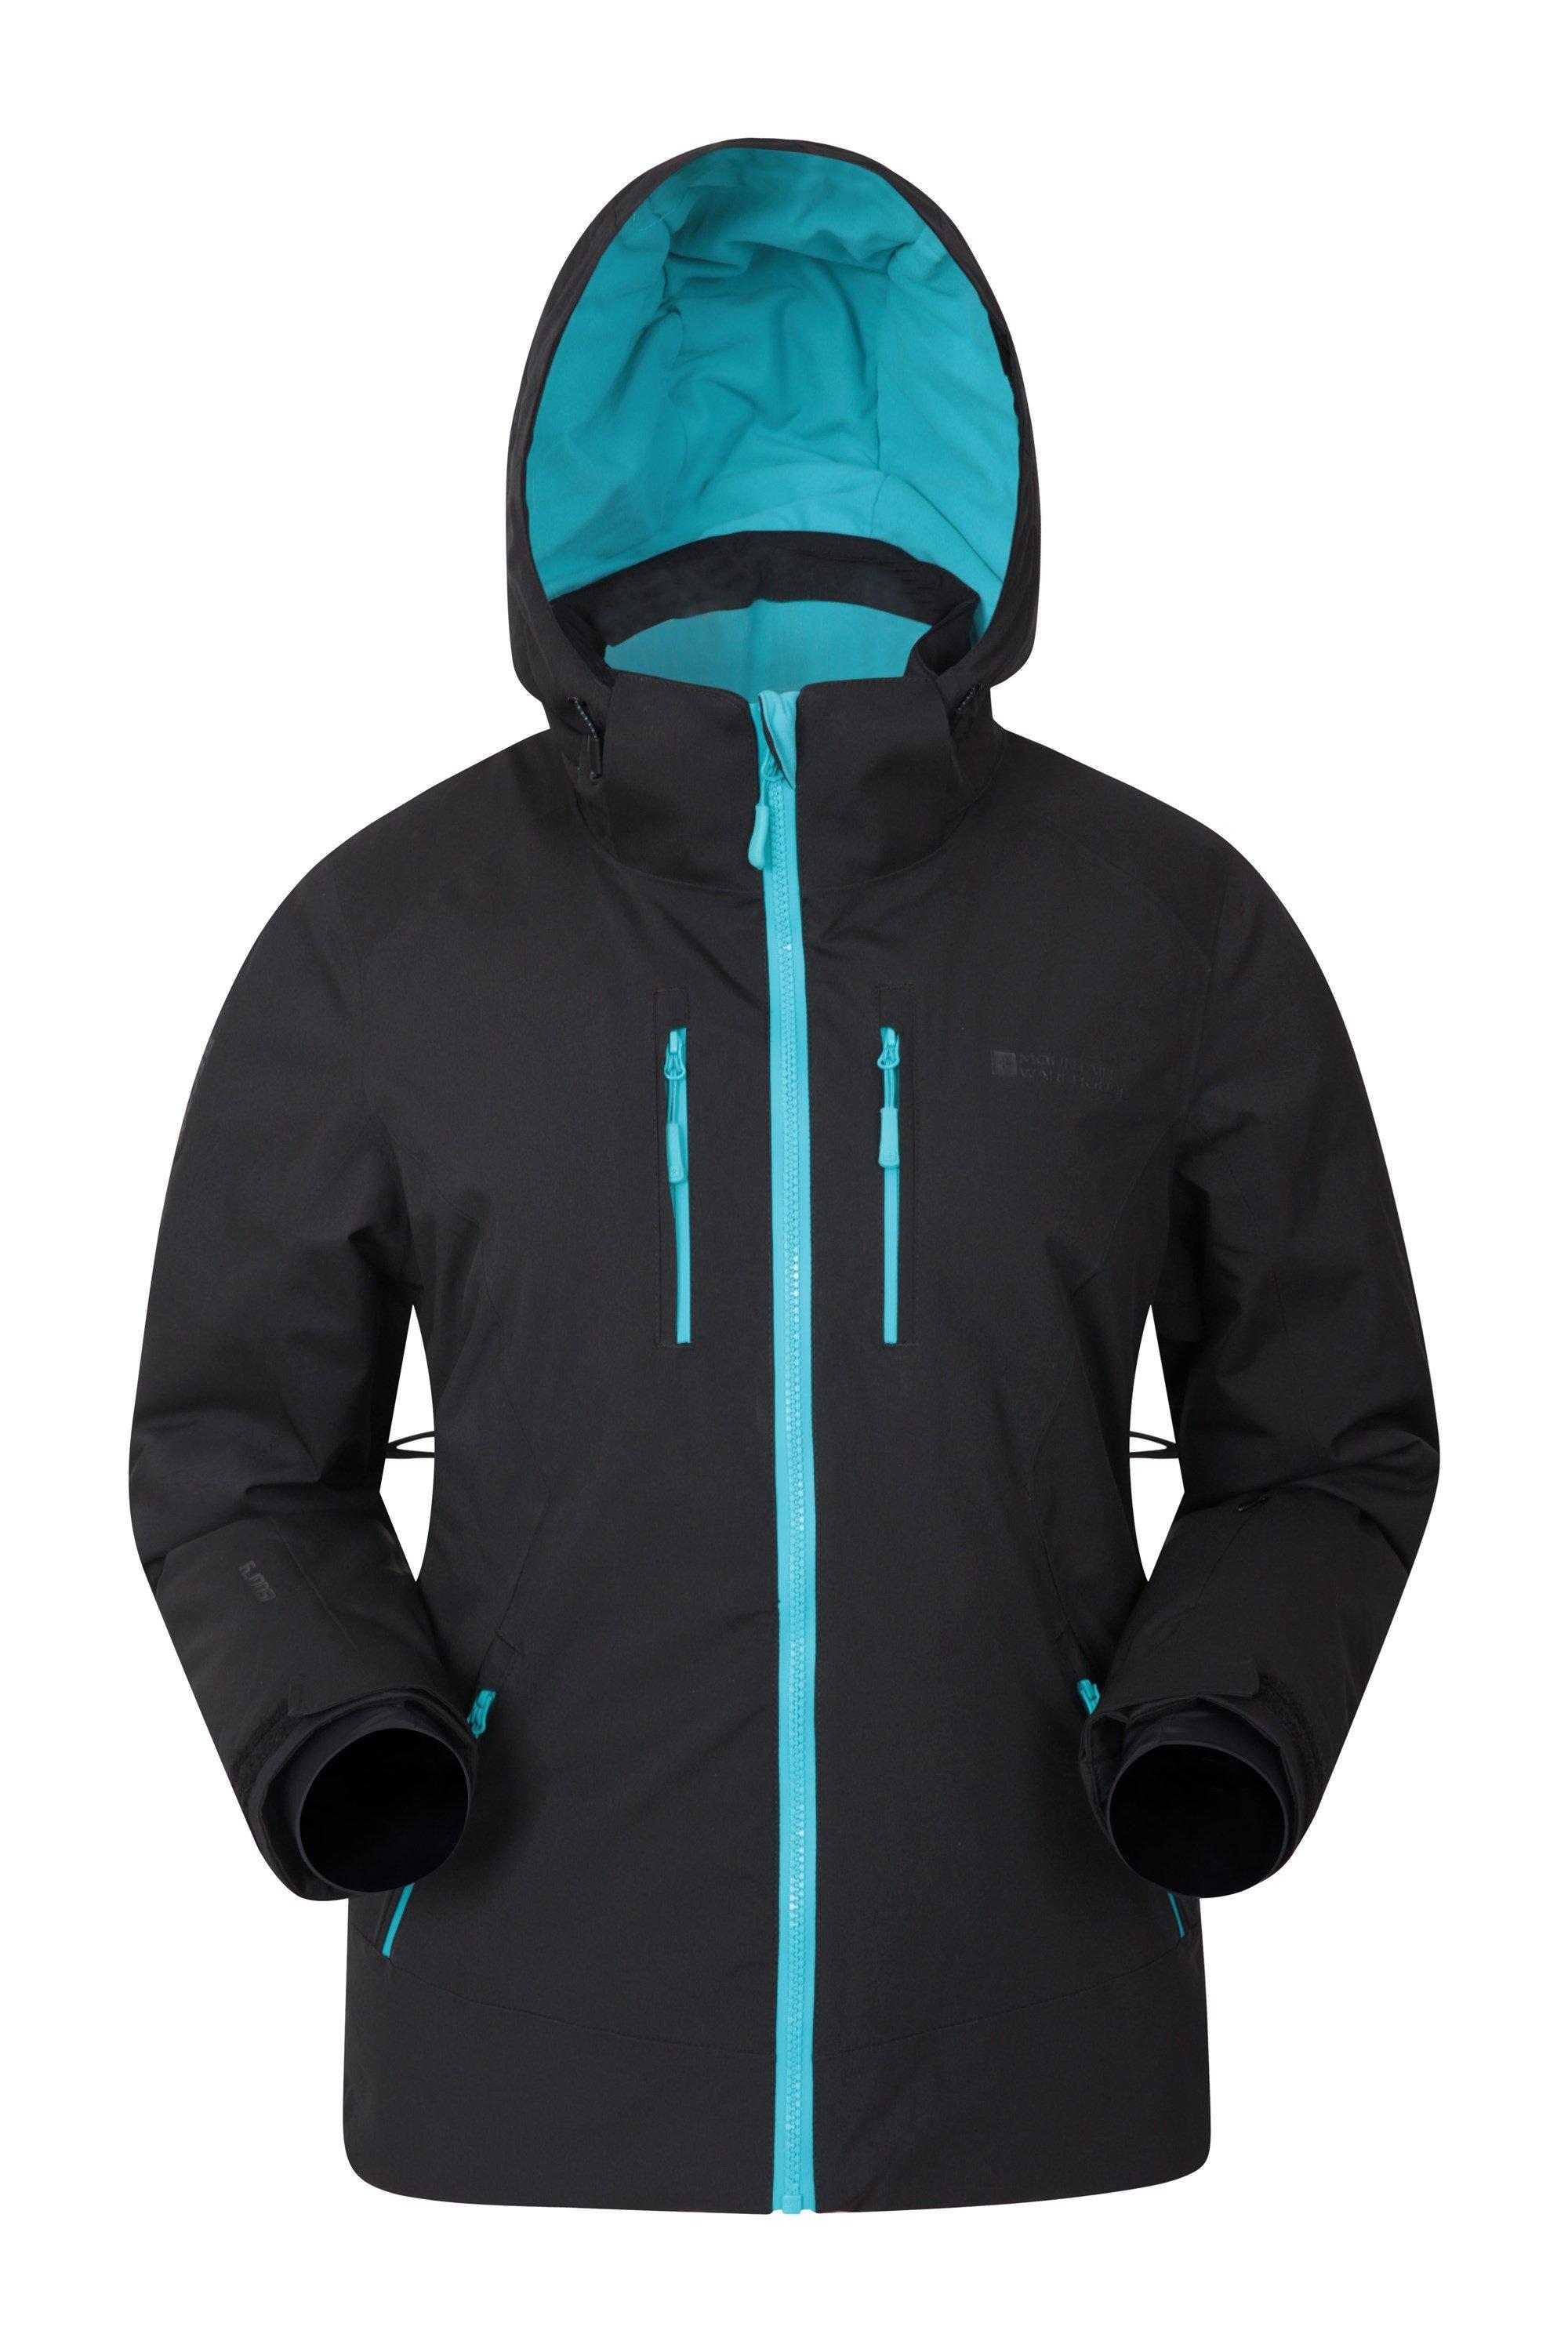 Лыжная куртка Slopestyle Extreme Утепленное пальто Mountain Warehouse, серый смывка лыжная zet 800 мл для удаления лыжной смазки сцепления